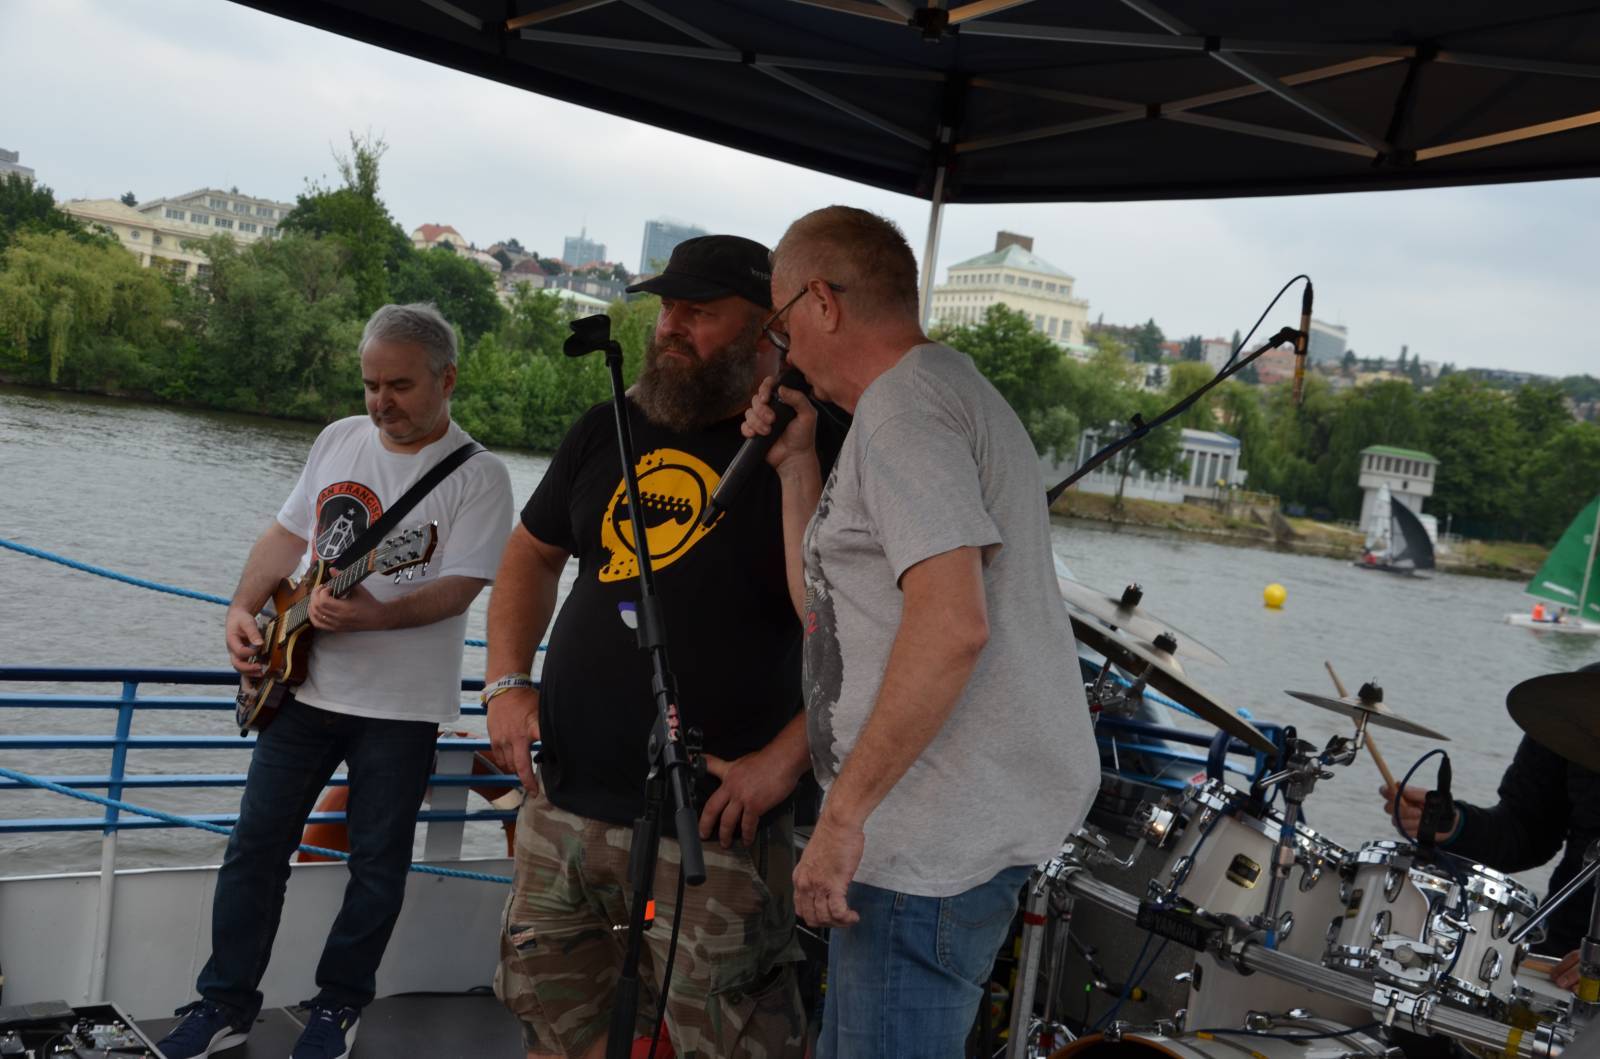 LIVE: Mňága a Žďorp vyrazila s fanoušky na plavbu po Vltavě, Petr Fiala chrlil vtipné hlášky